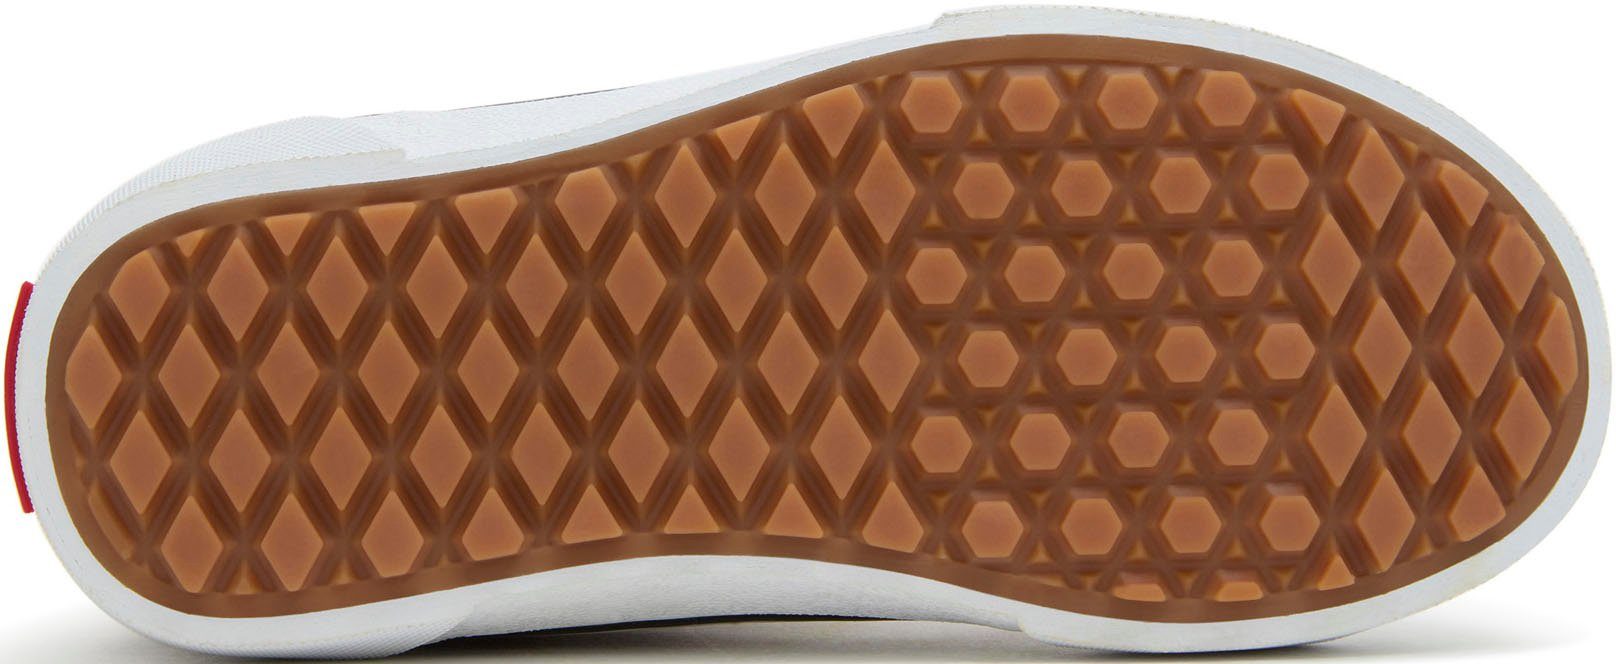 Vans Filmore Hi VansGuard Sneaker mit Ferse Logo an kontrastfarbenem der